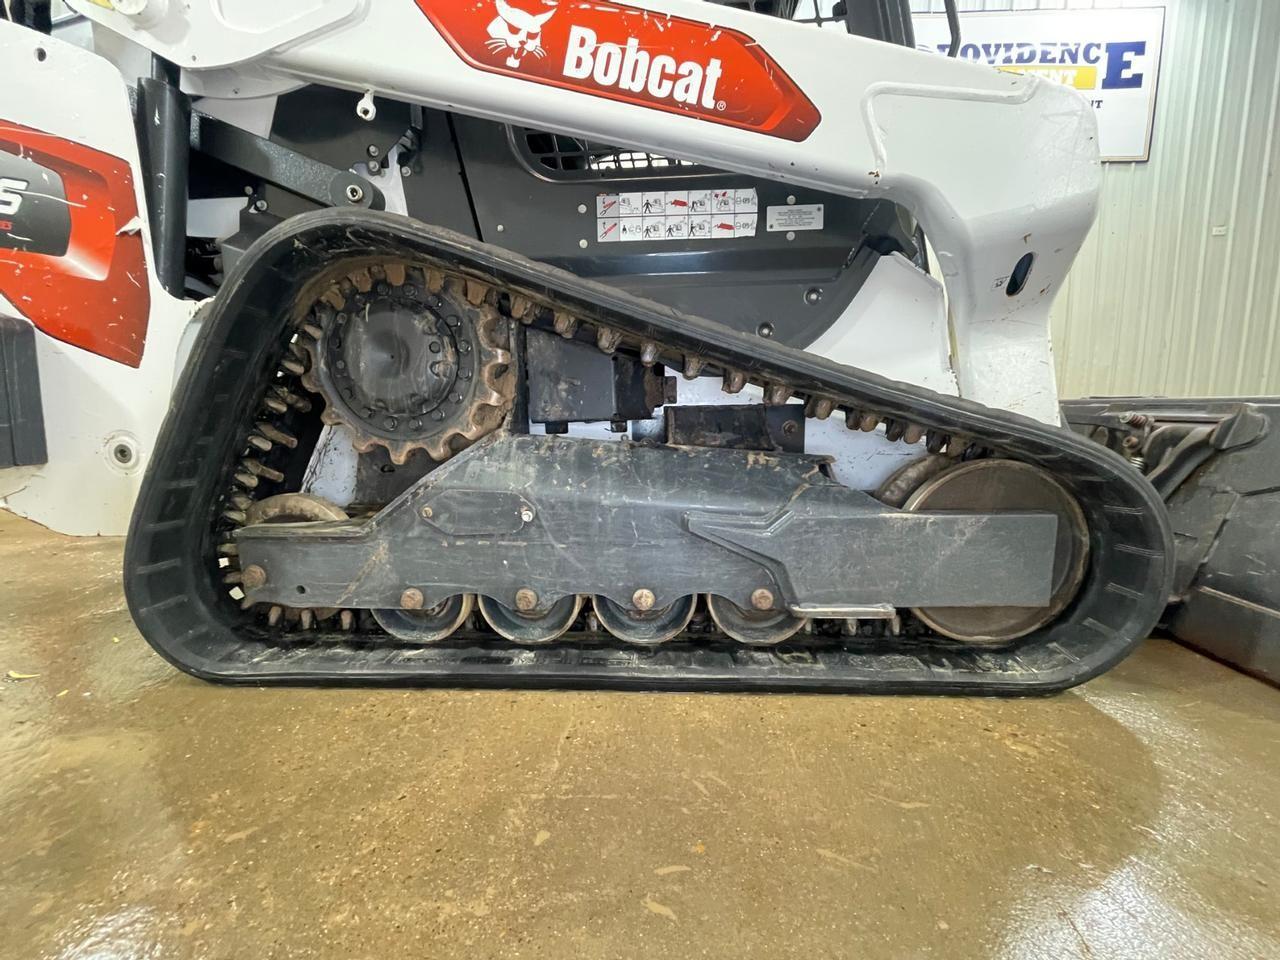 2021 Bobcat T66 Skid Steer Loader